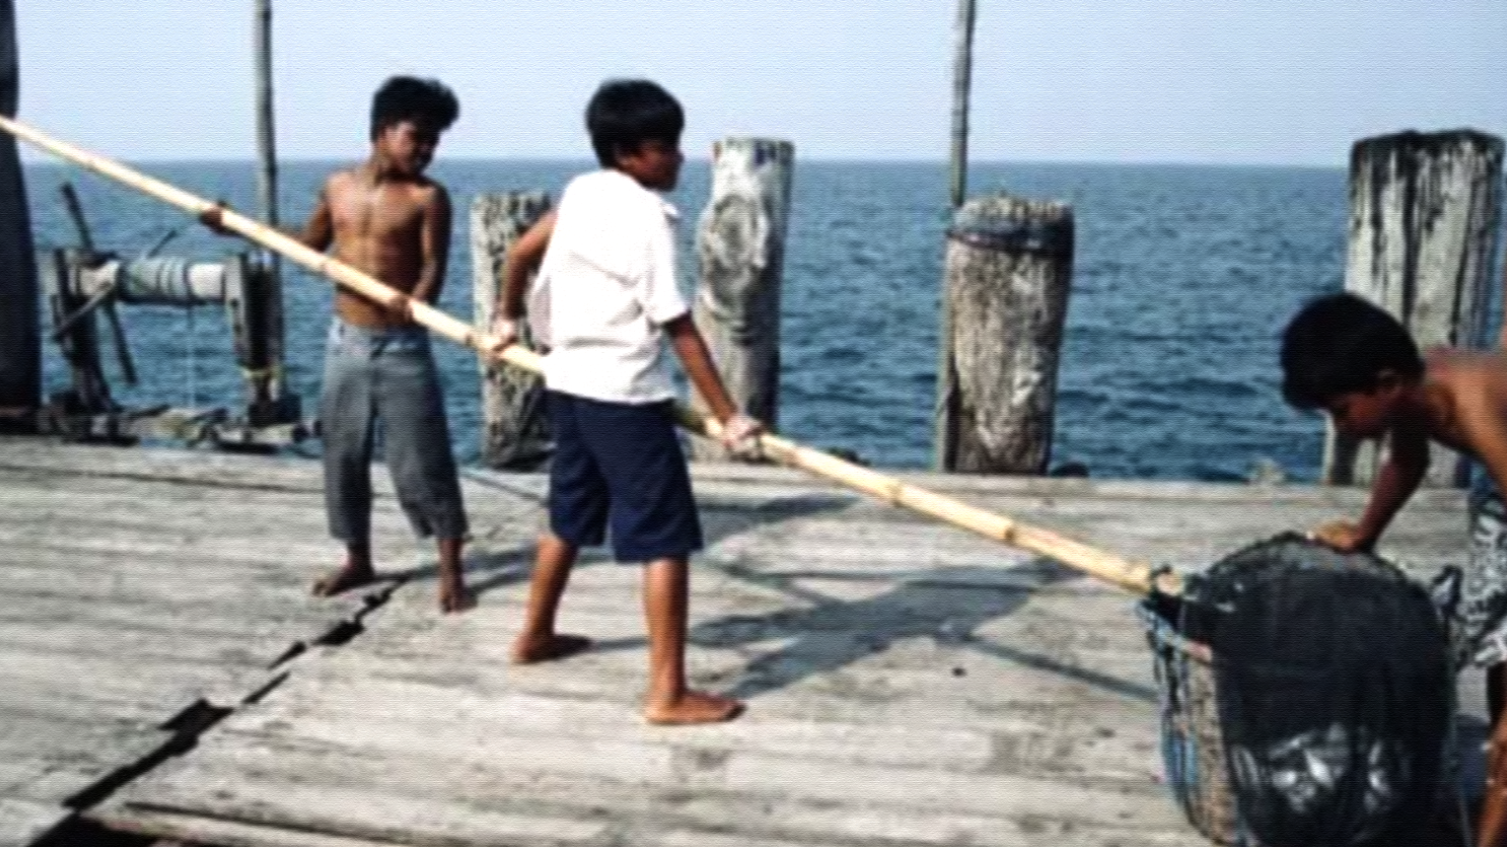 Anak-anak di bawah umur yang ikut bekerja di sebuah pantai, membantu perekonomian keluarga. (Foto: Dok. Lautsehat.id)